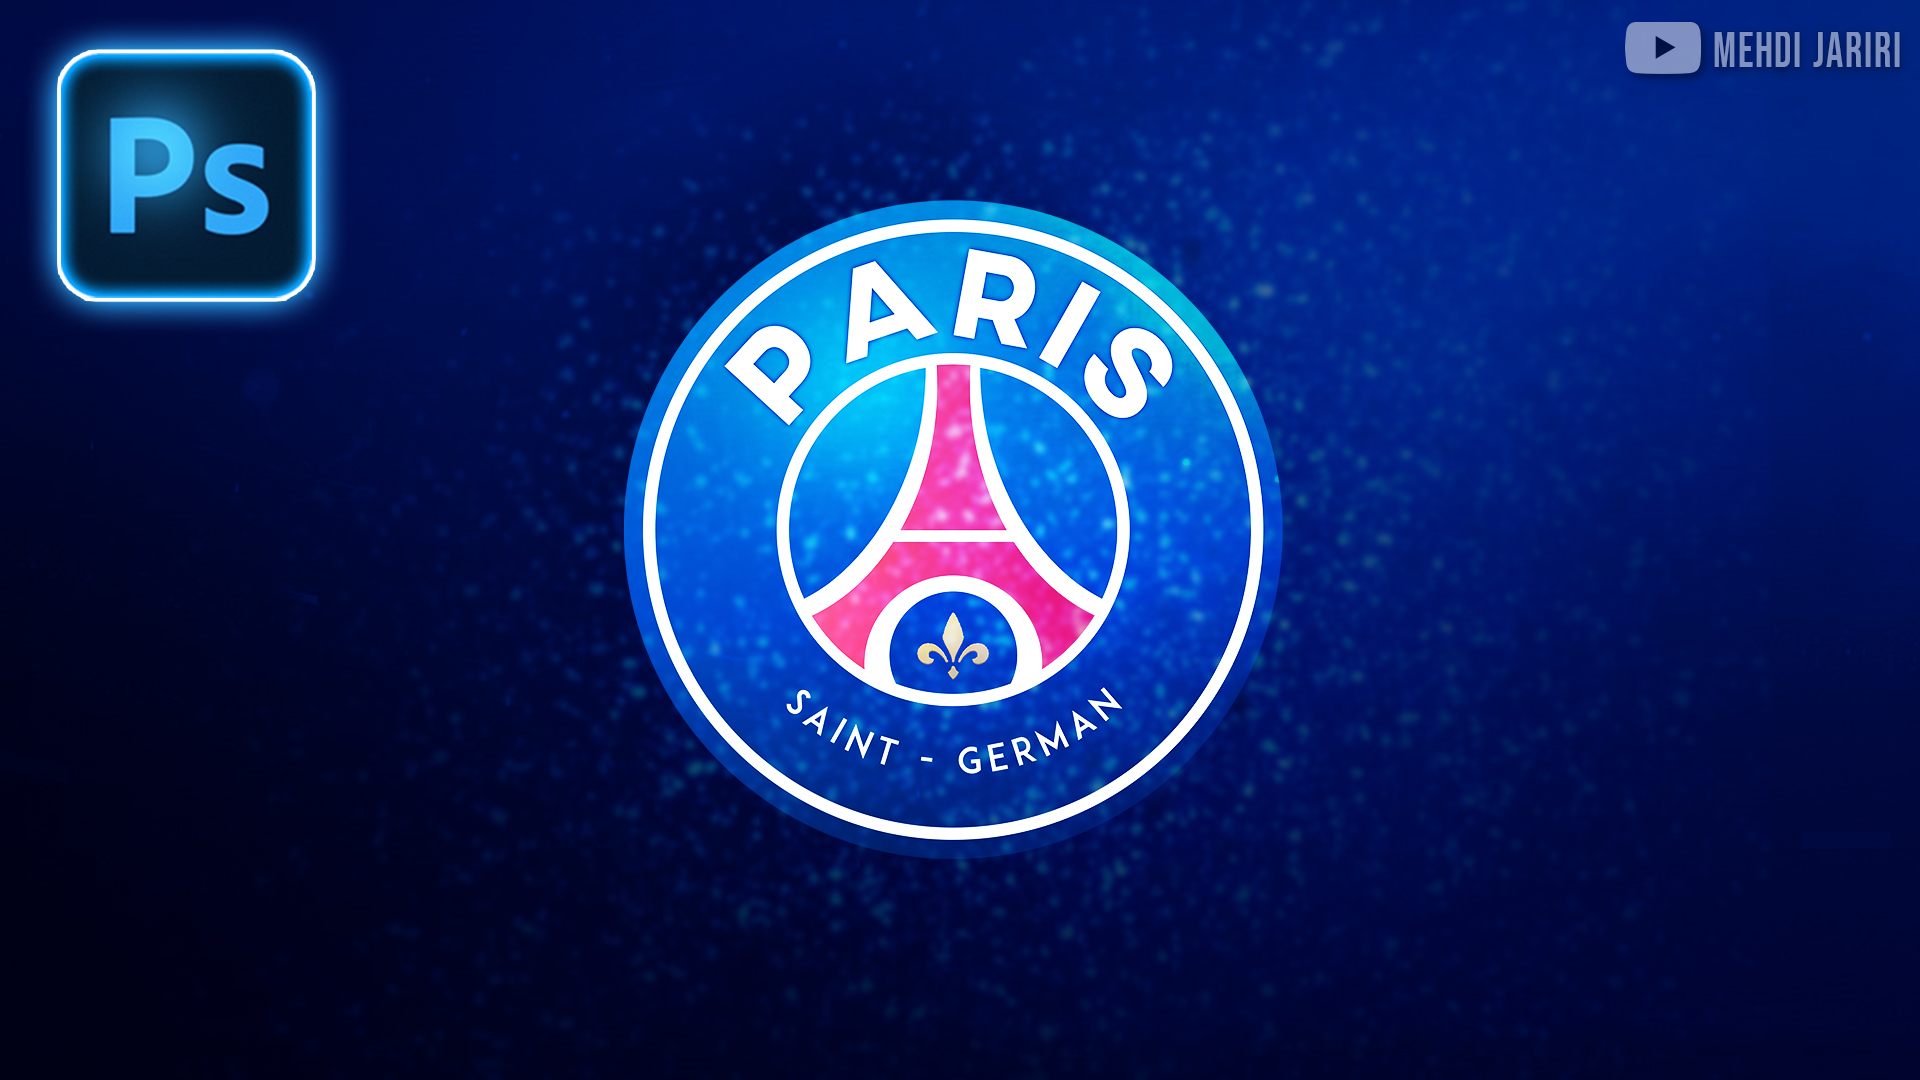 تصميم لوجو باريس في الفوتوشوب | PSG Logo Design in Photoshop